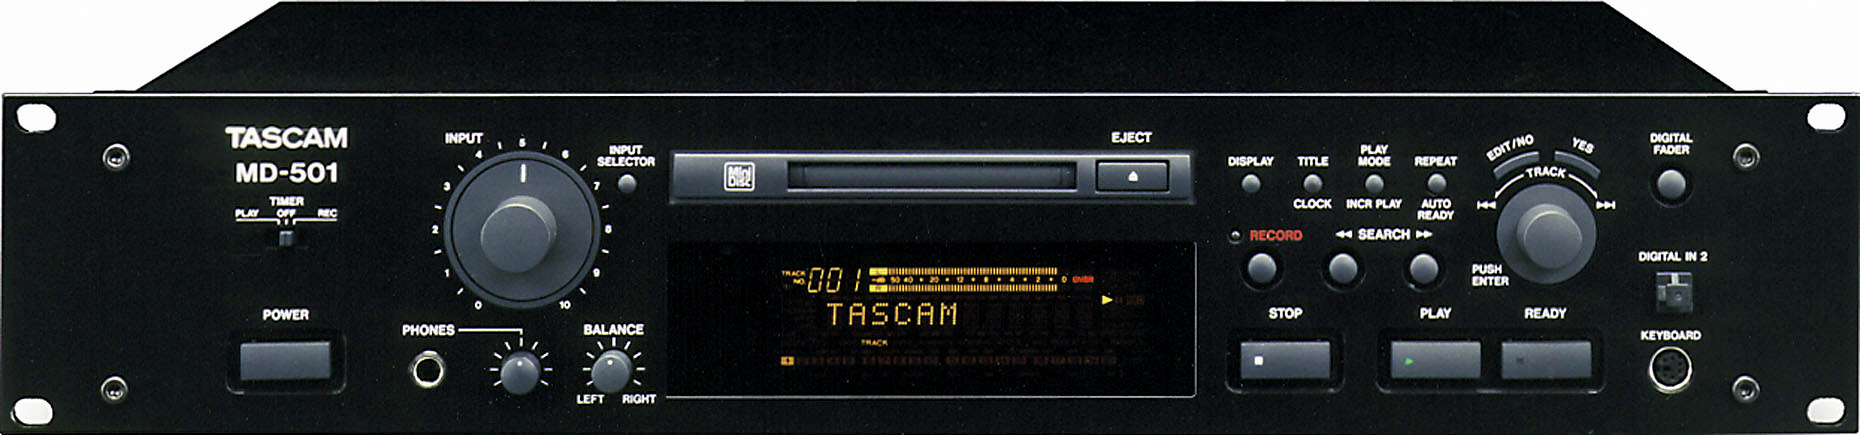 Tascam MD-501-Prospekt-1.jpg